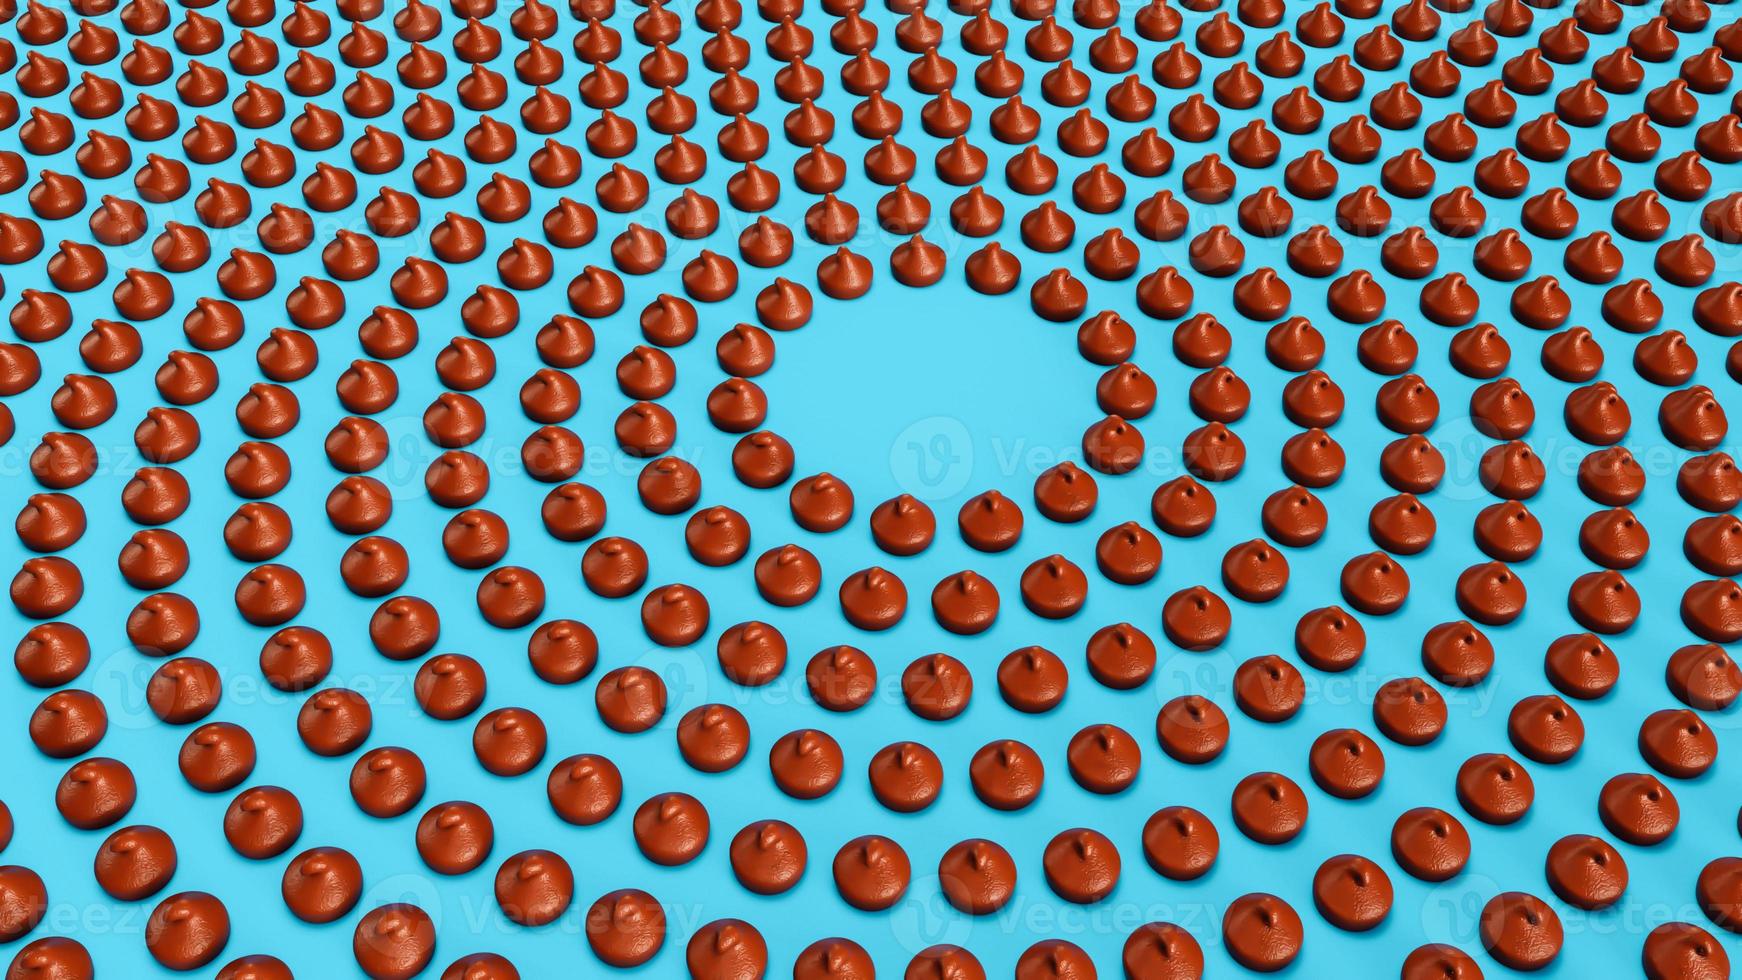 filas de bocados de chispas de chocolate o gotas alrededor del círculo en la ilustración 3d de fondo aislado foto